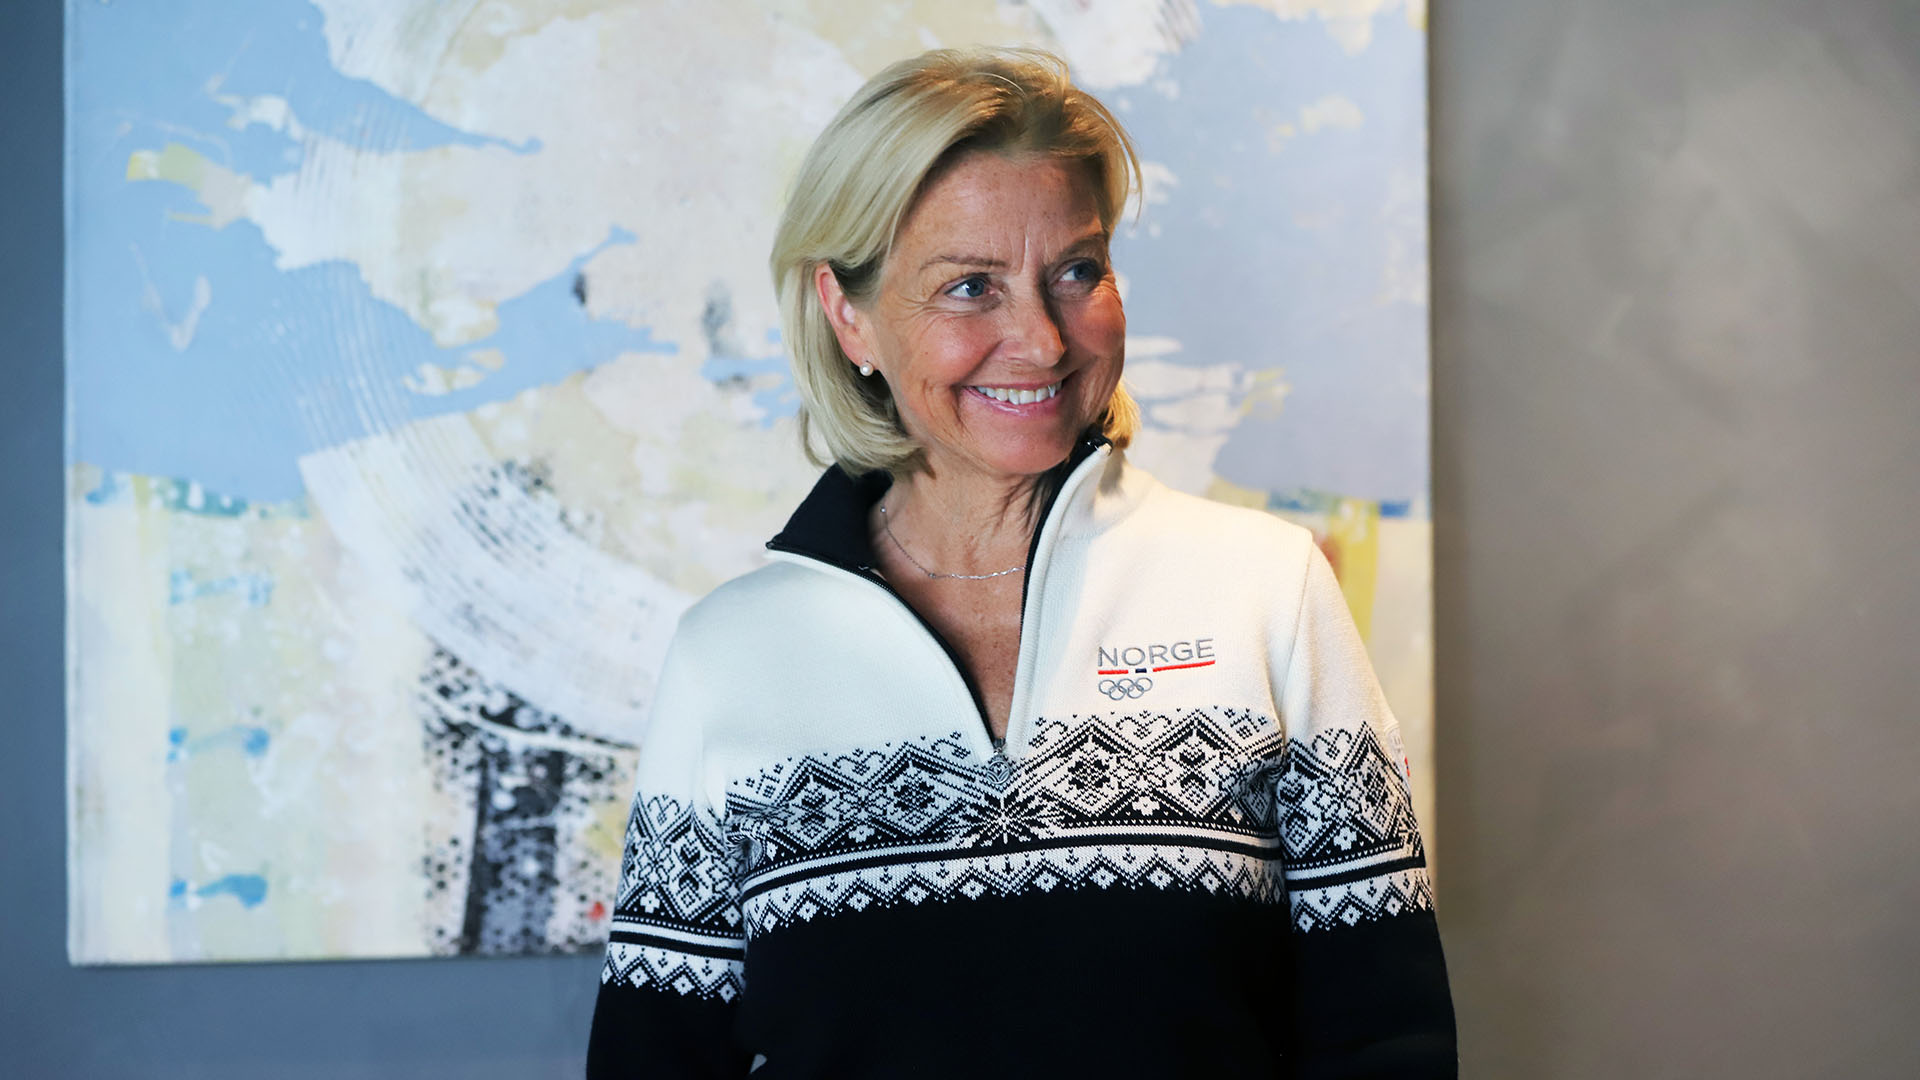 Idrettspresident Berit Kjøll gleder seg til å ta fatt på oppgaven. Foto: Marte Hoel Romskaug